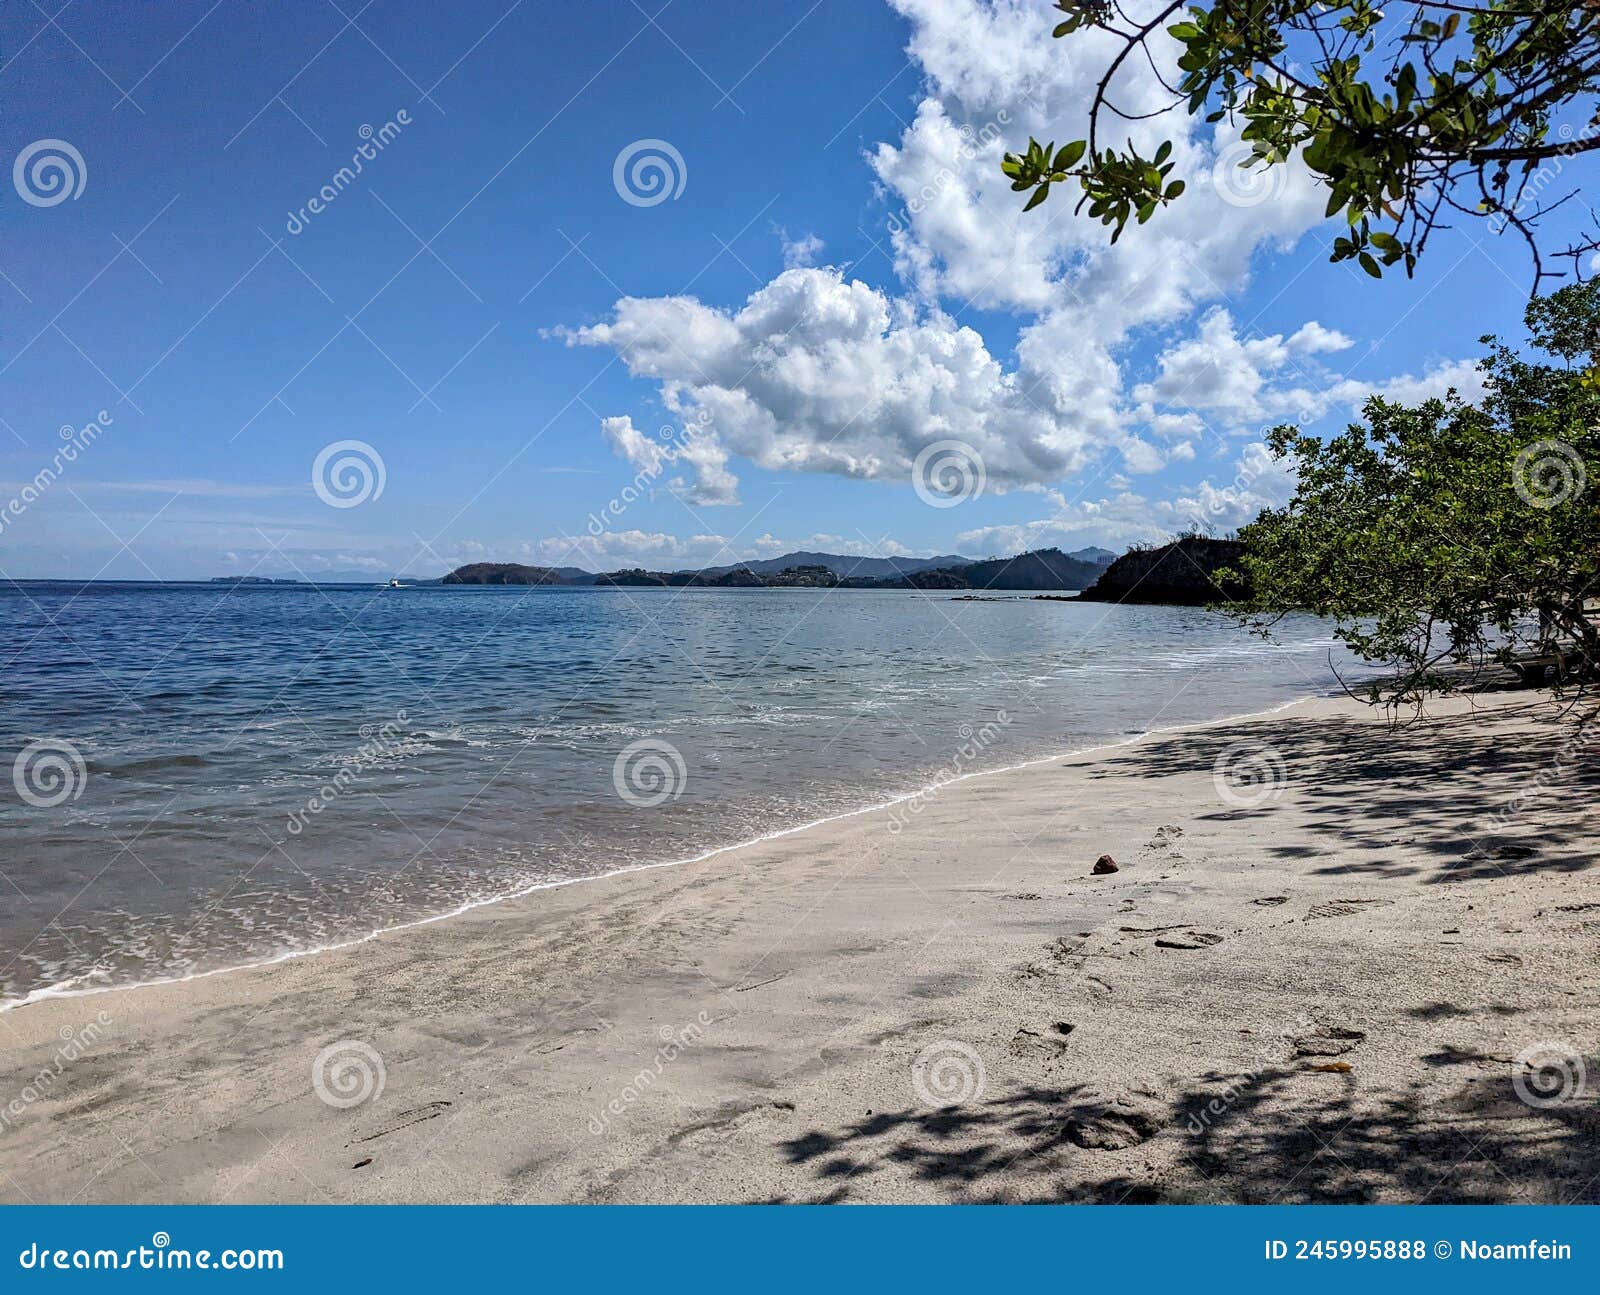 conchal beach in costa rica